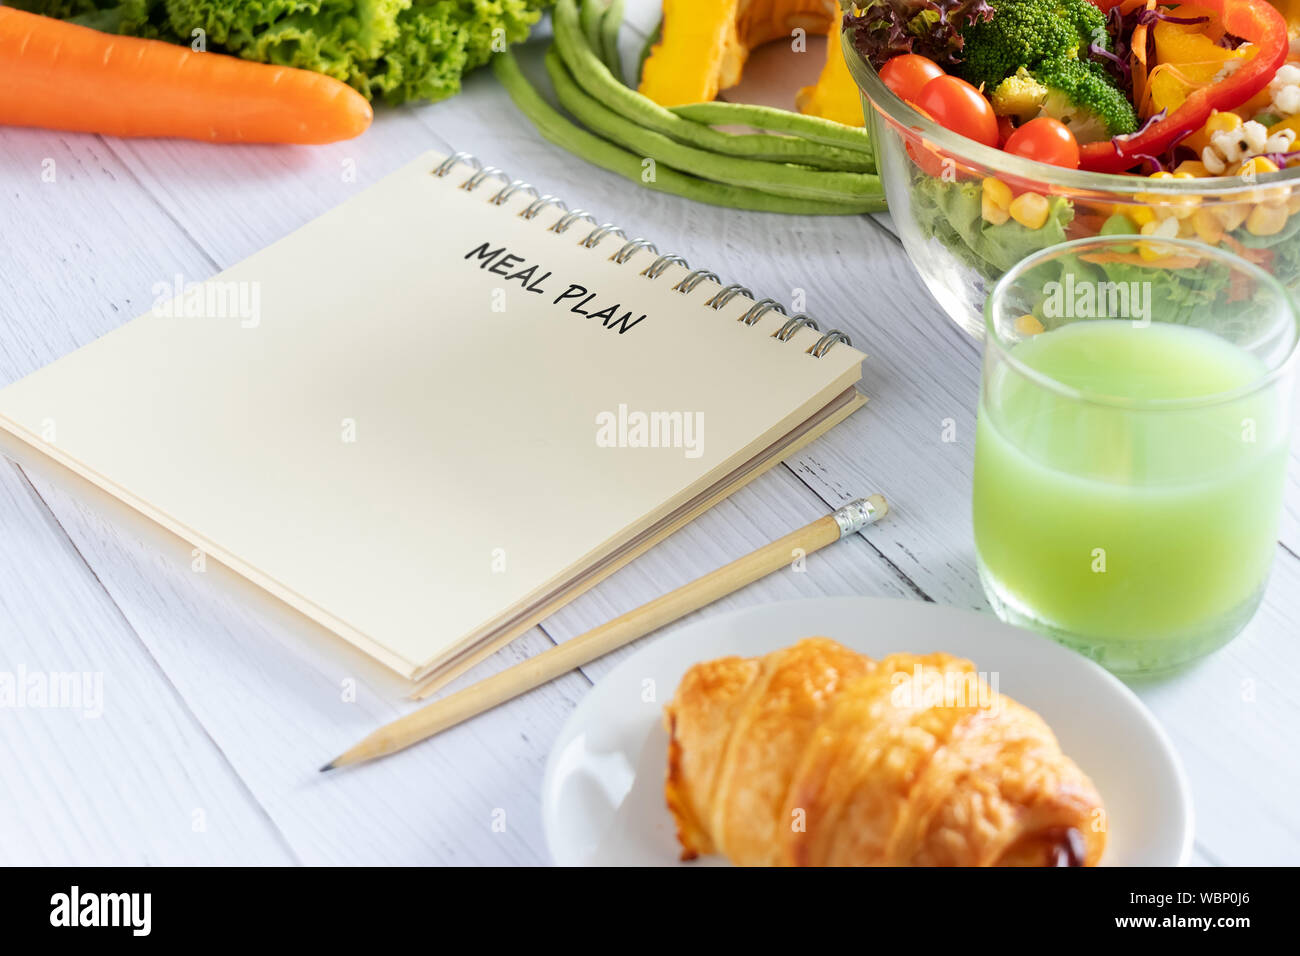 Kalorien, Speisen, Ernährung und Gewichtsabnahme Konzept. Speisen schreiben auf Notebook Planner mit Salat, Obst, Saft, Brot und Gemüse. Stockfoto